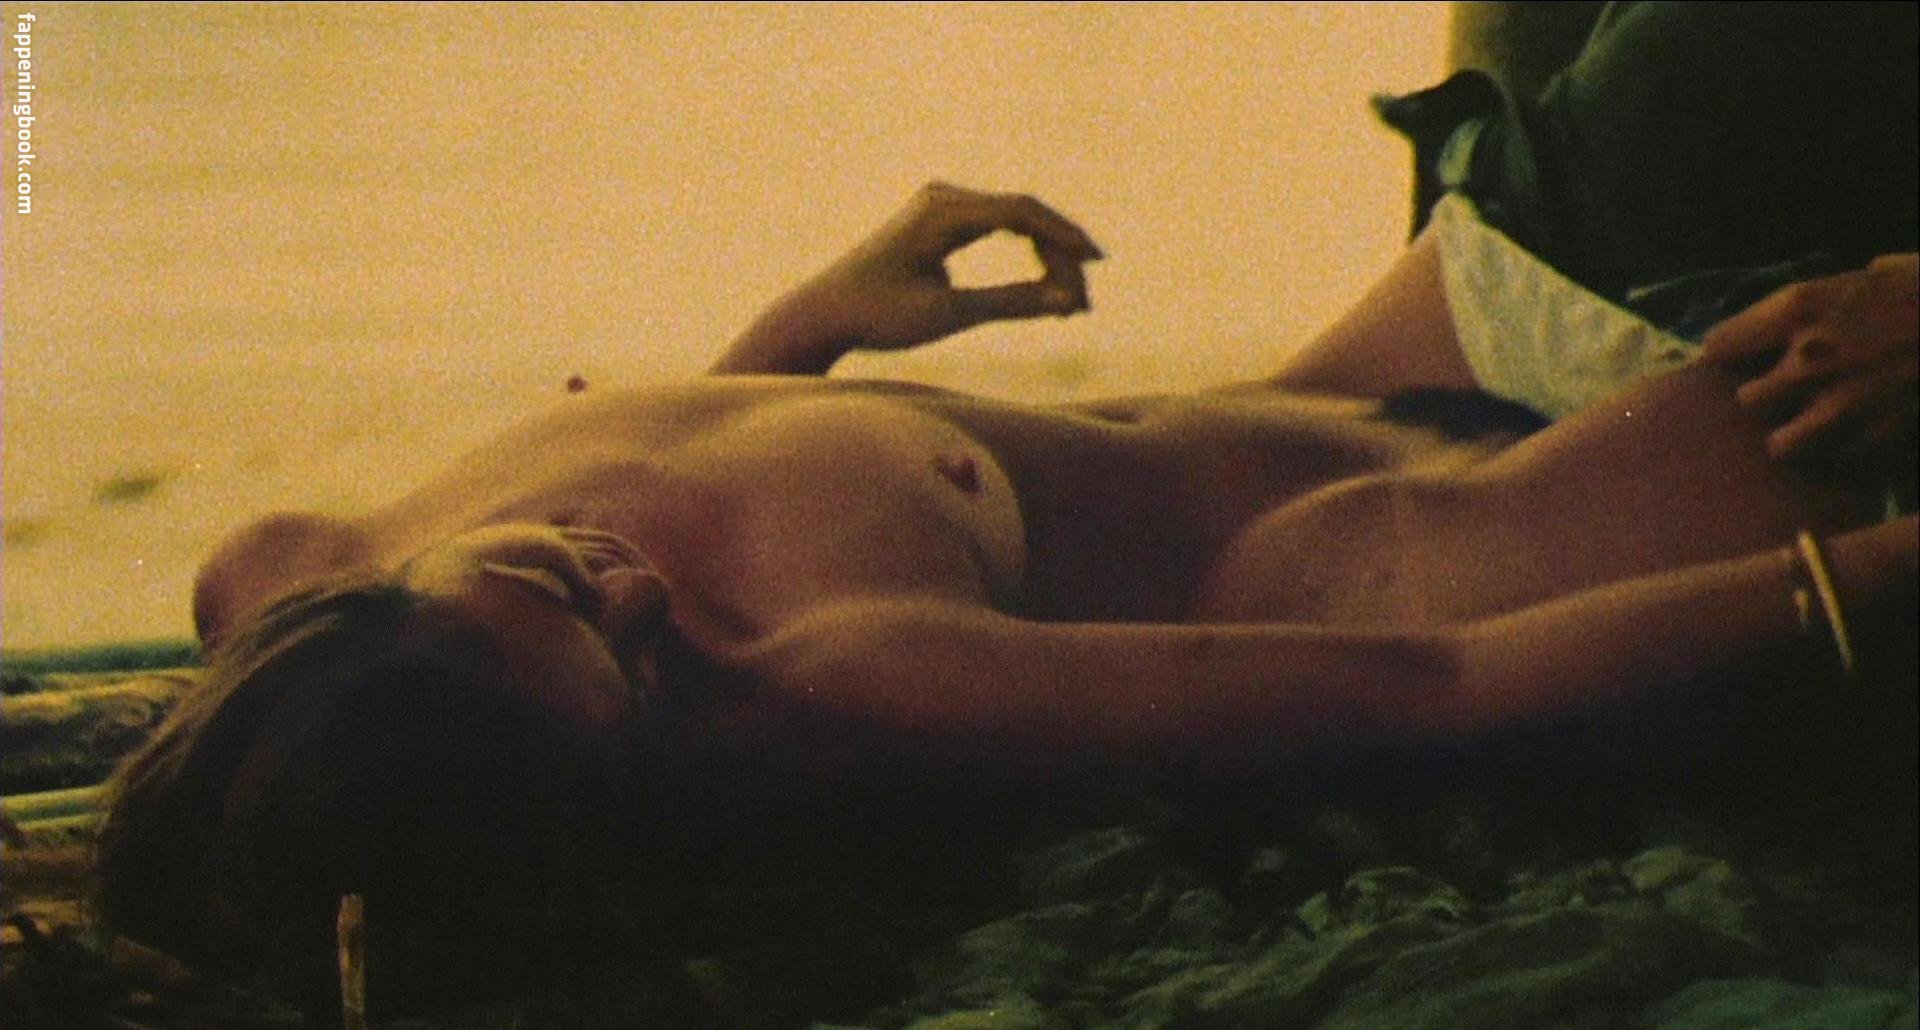 Francesca Ciardi Nude